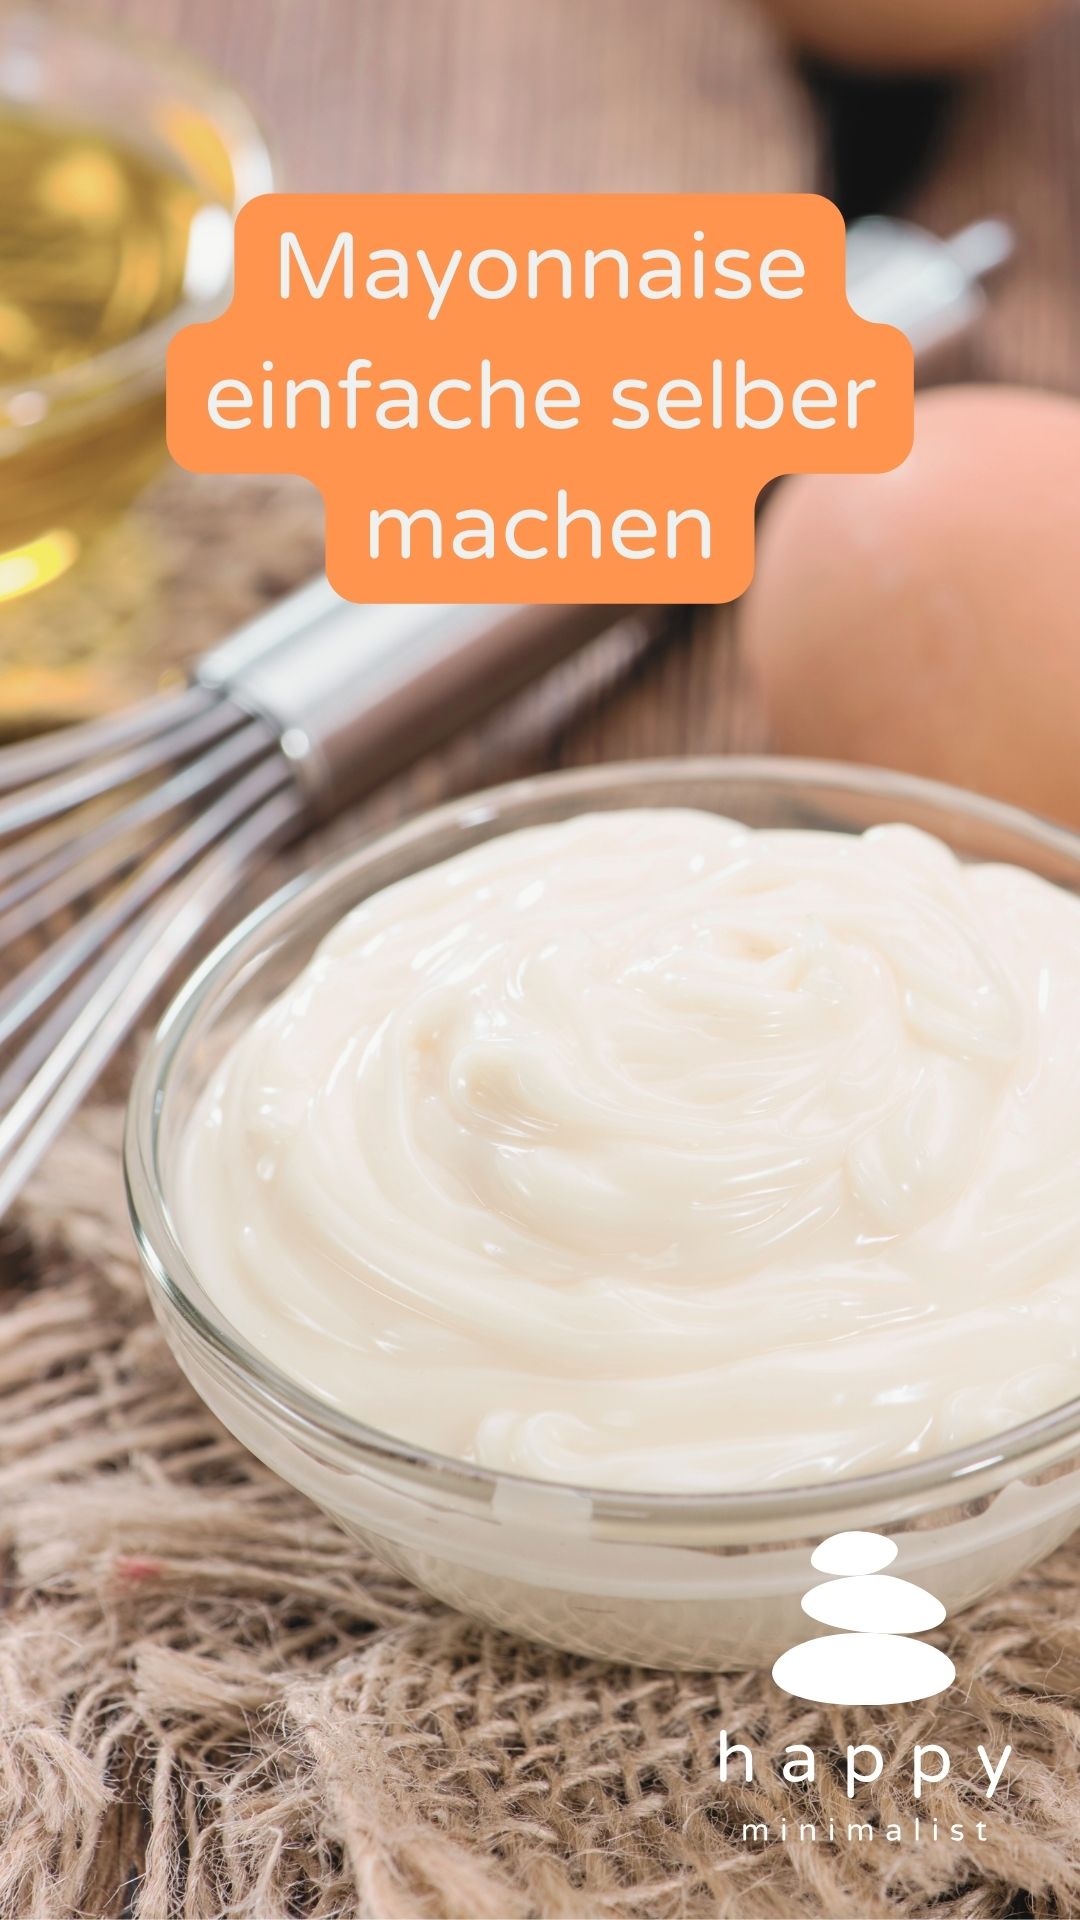 Fruchtig-frische Mayonnaise ohne Zusatzstoffe? Hier findest du ein einfaches Rezept, damit du deine eigene köstliche Mayonnaise zu Hause zaubern kannst.